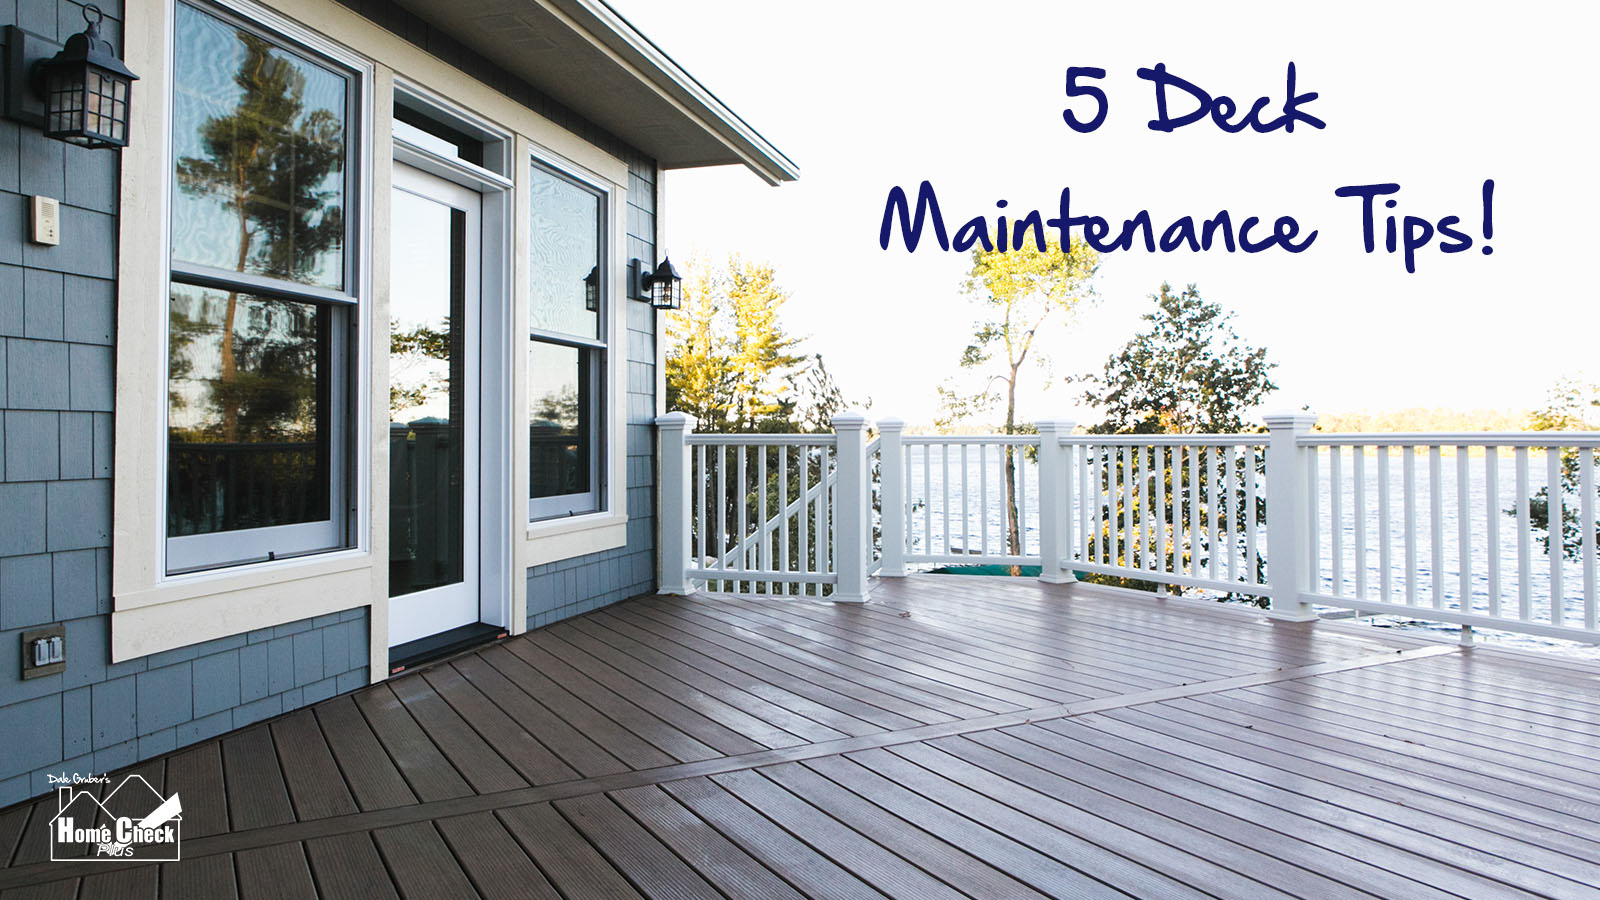 5 Deck Maintenance Tips!